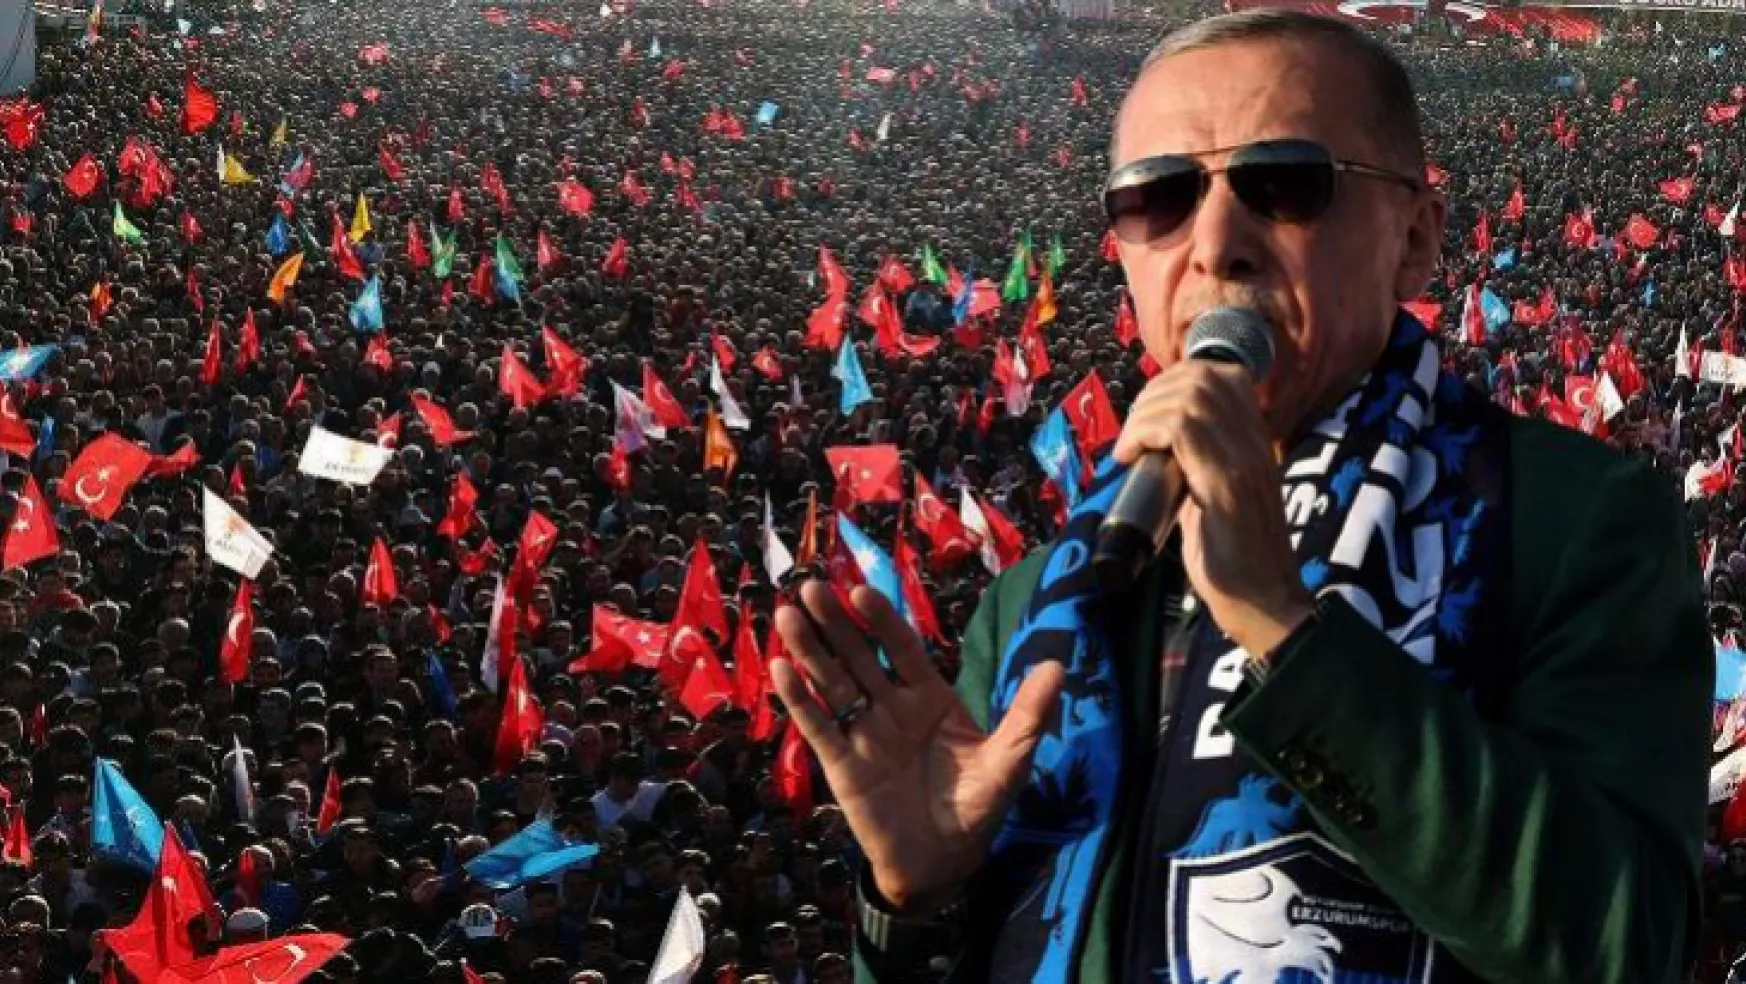 Erdoğan'dan 14 Mayıs mesajı: Yabancı dergiler dışında kimse karalar bağlamayacak